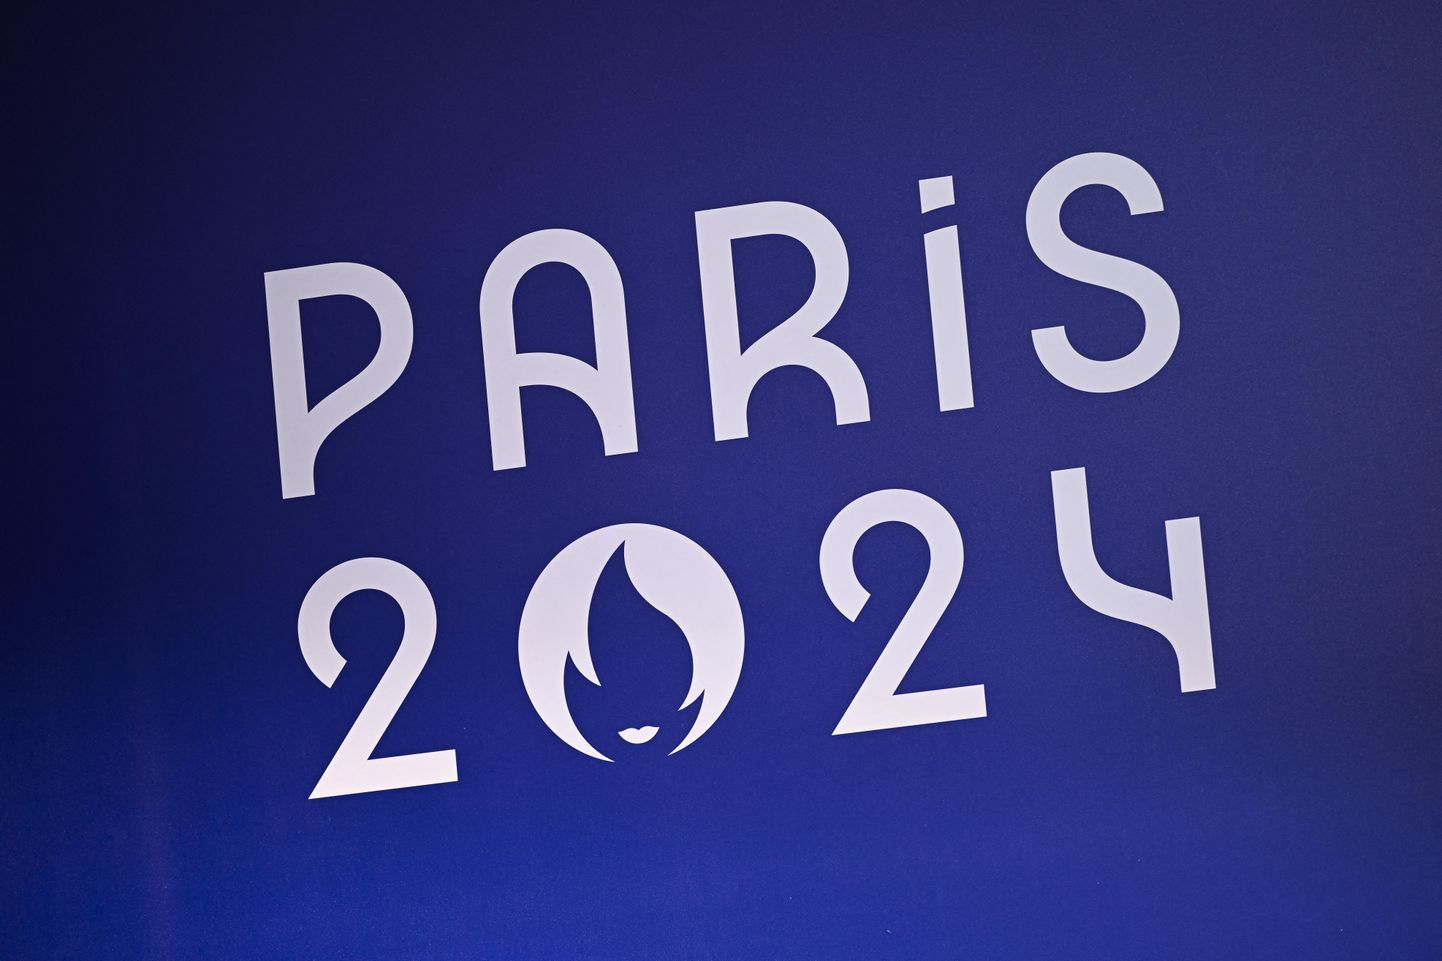 Логотип парижской Олимпиады 2024.